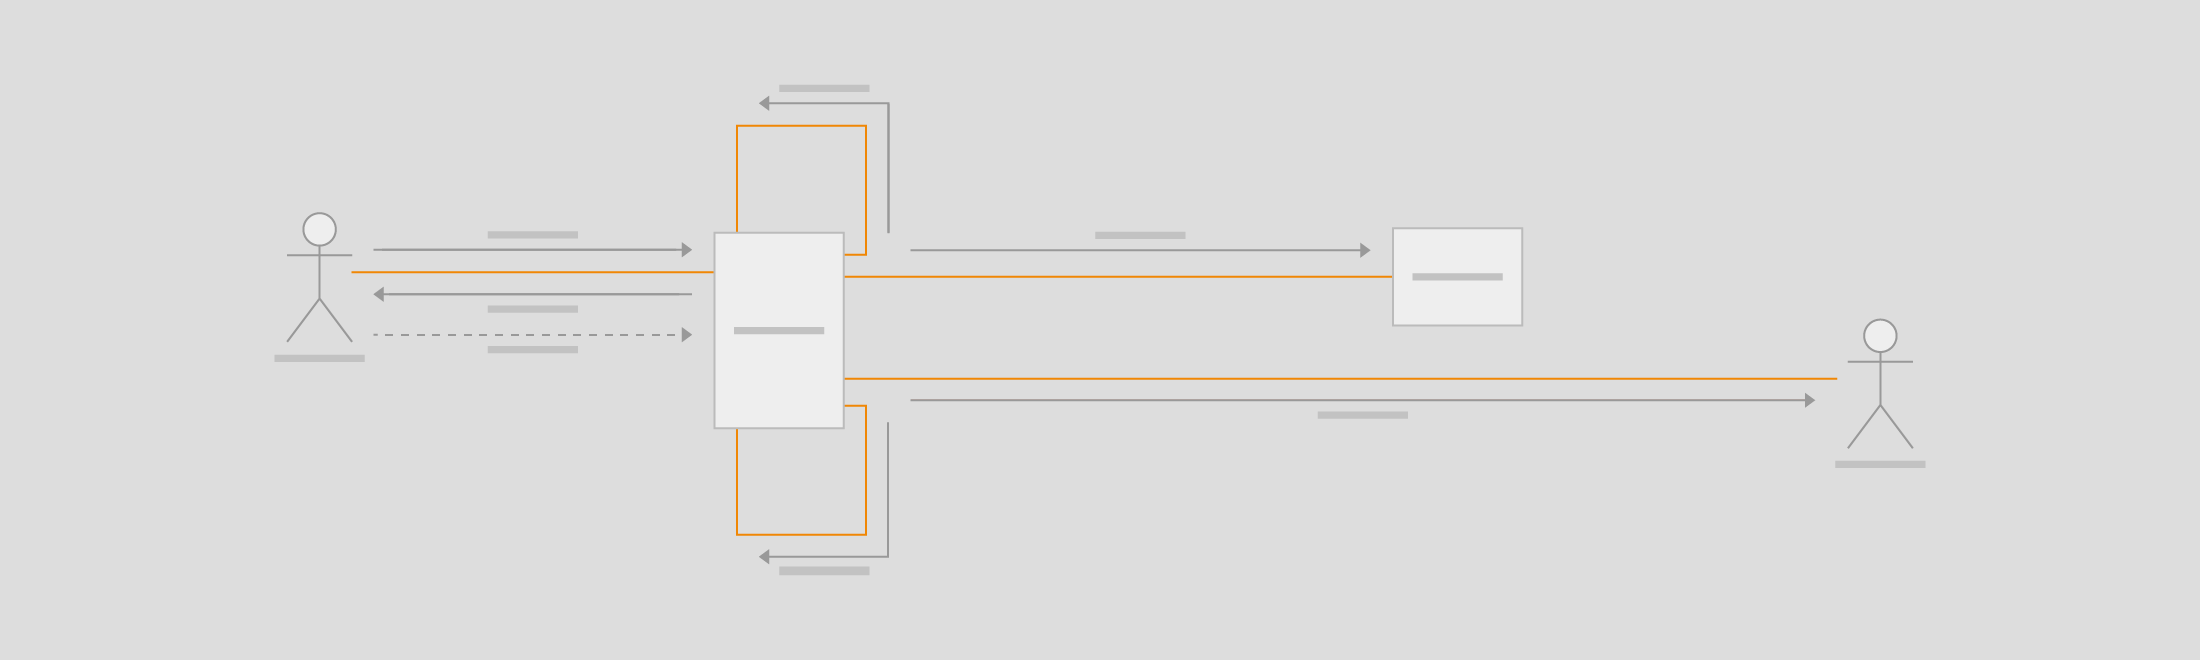 Create UML communication diagrams in draw.io.